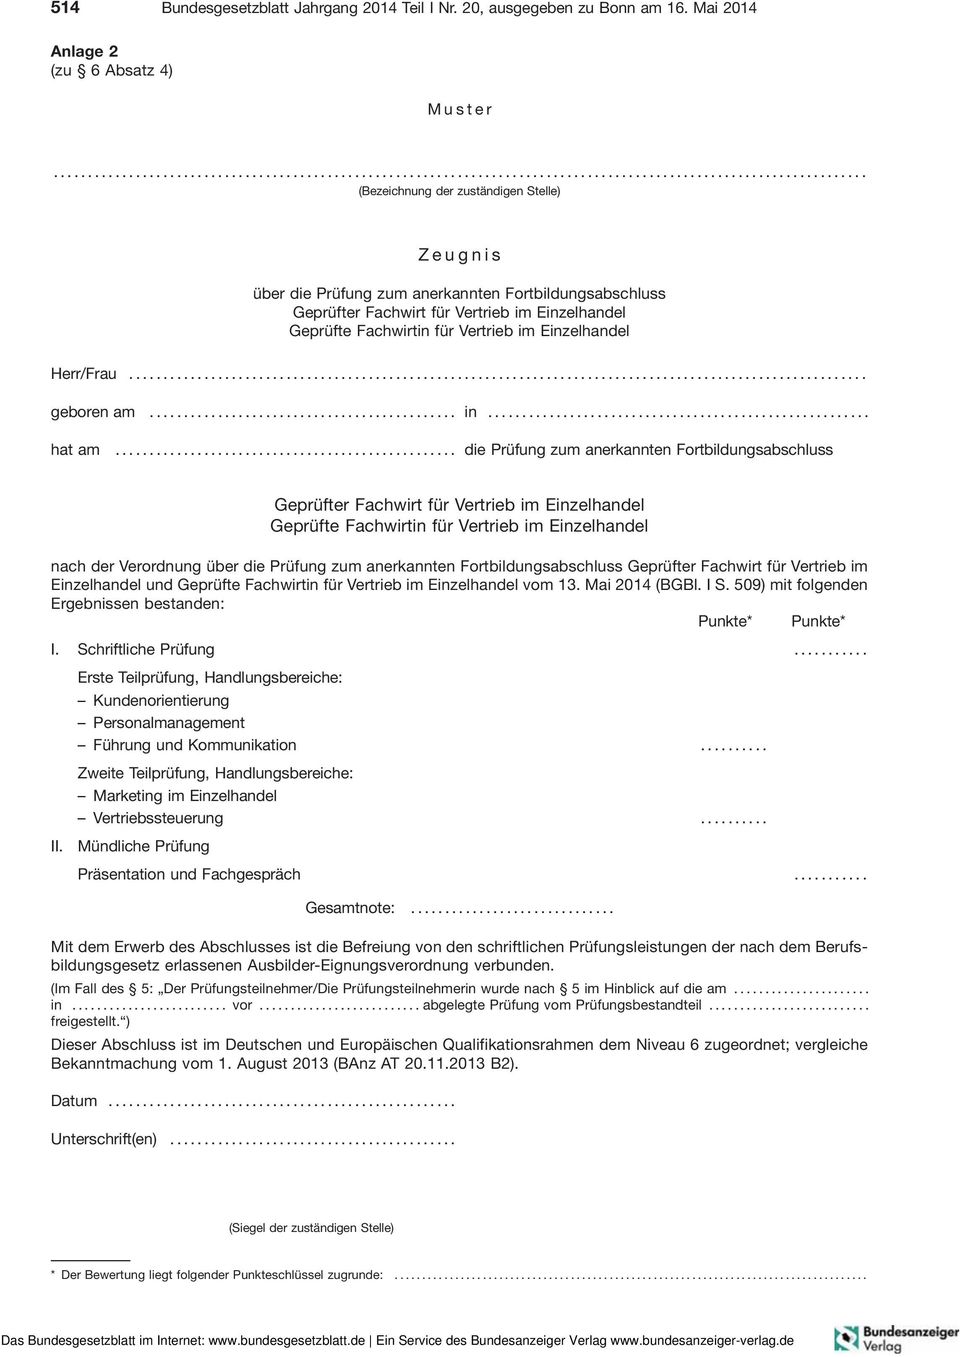 .. die Prüfung zum anerkannten Fortbildungsabschluss nach der Verordnung über die Prüfung zum anerkannten Fortbildungsabschluss Geprüfter FachwirtfürVertriebim Einzelhandel und vom 13. Mai 2014 (BGBl.